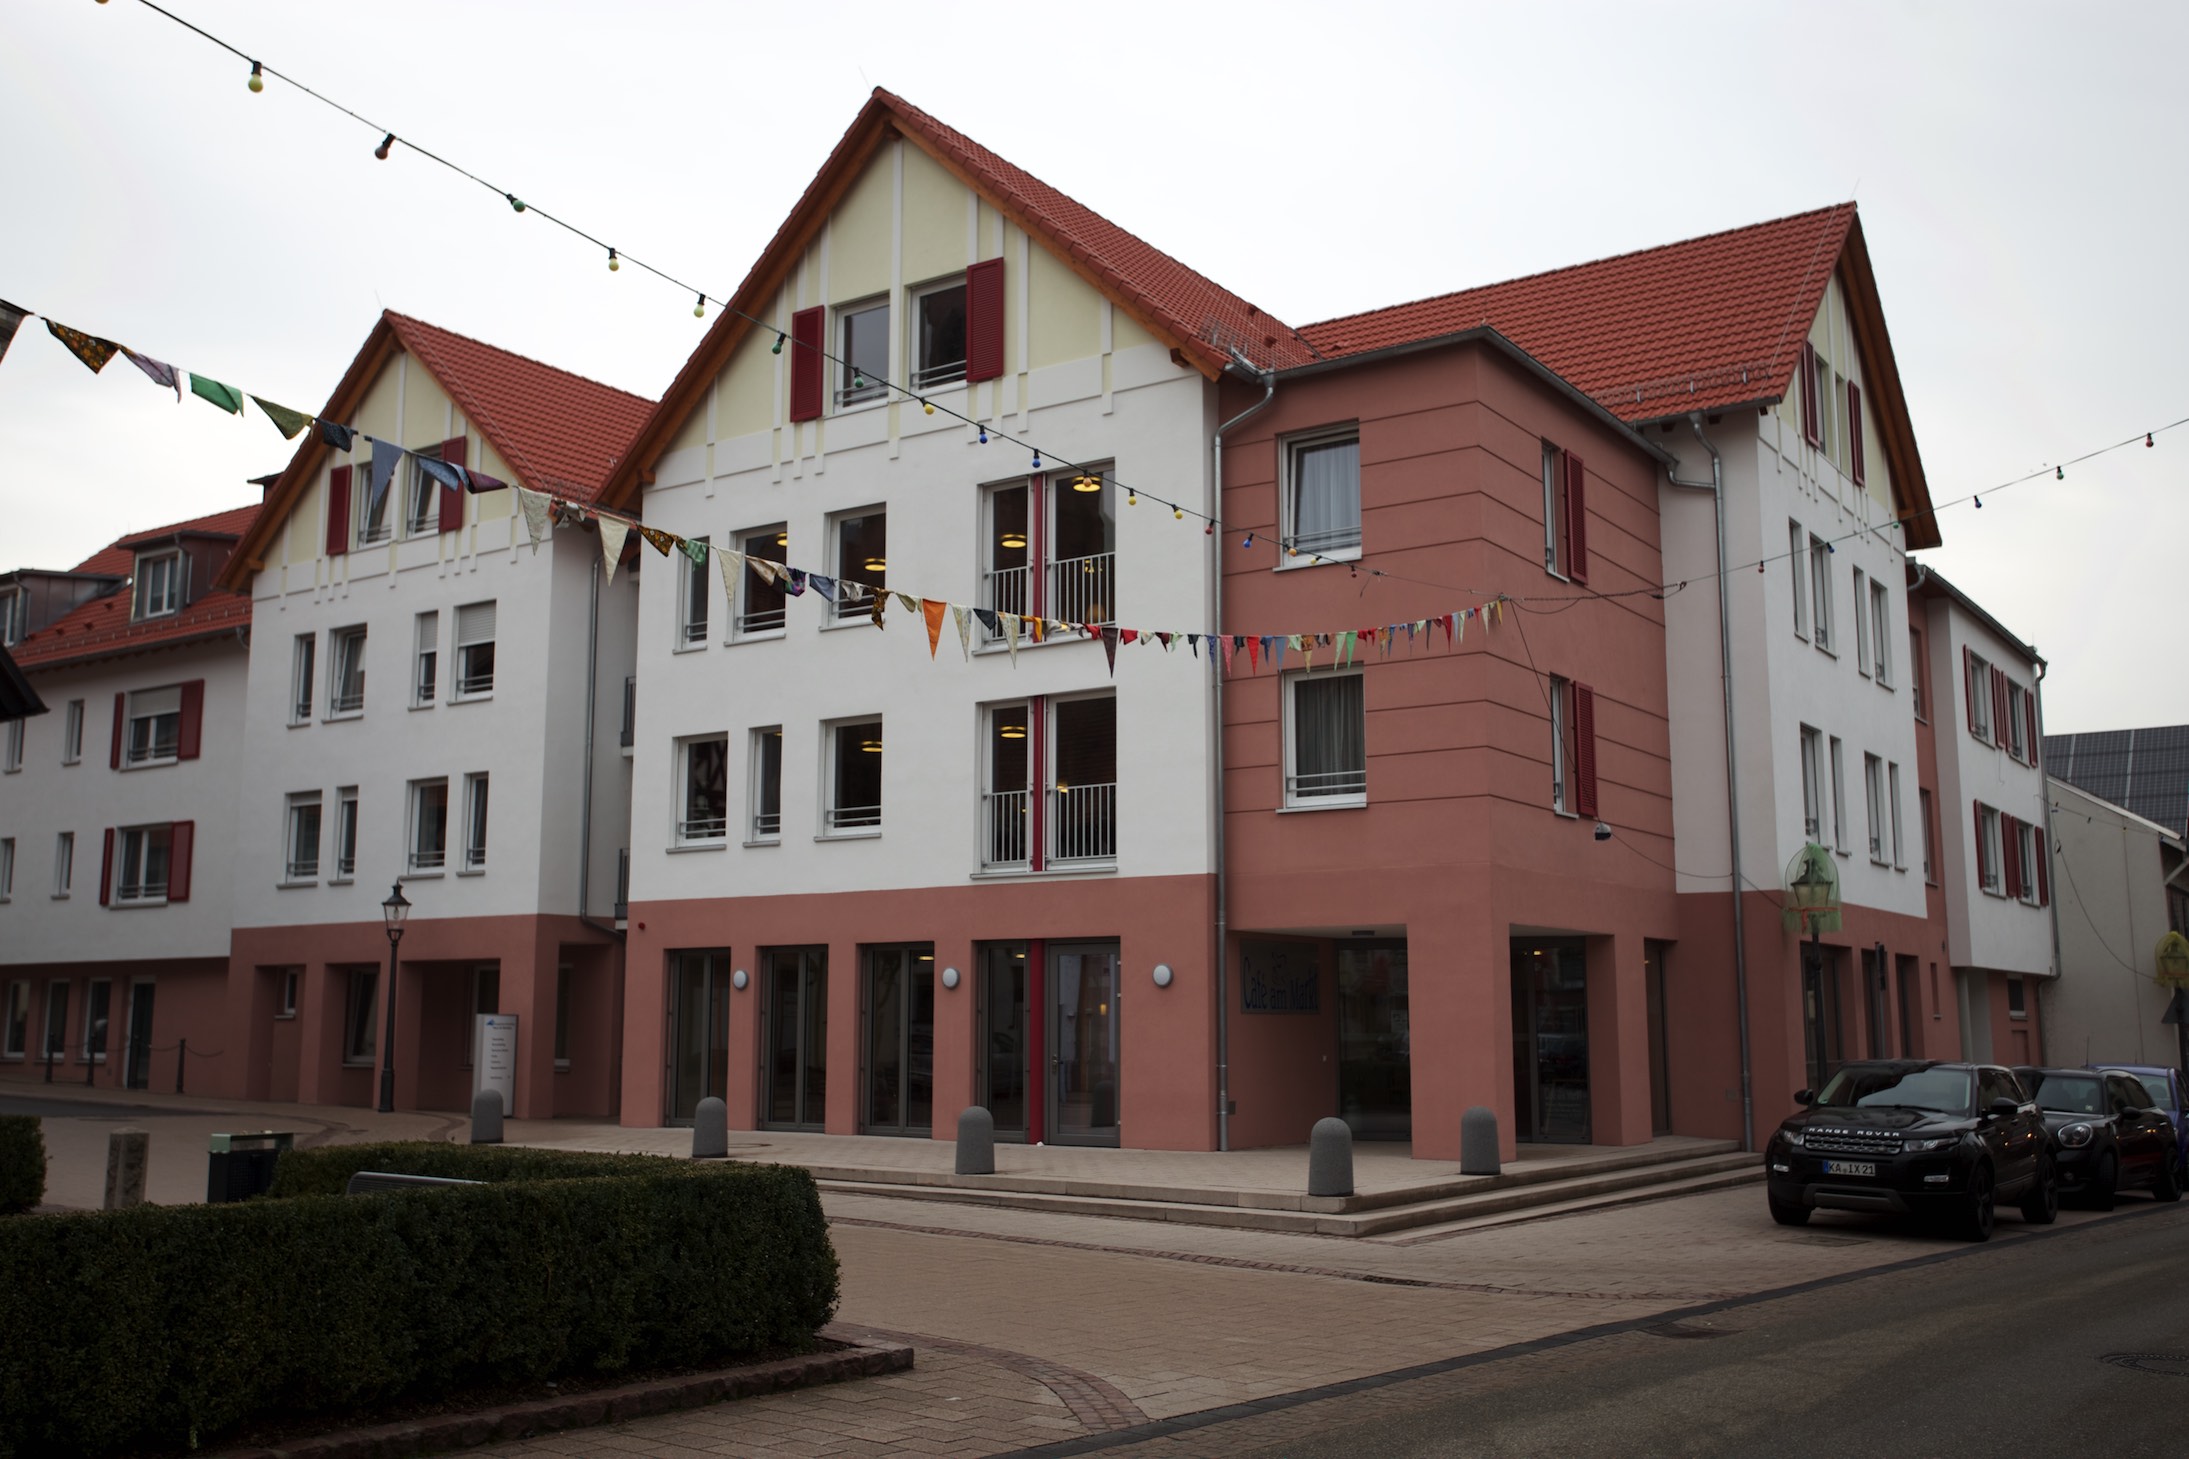 Die Gemeinde Kappelrodeck möchte das 'Haus am Marktplatz